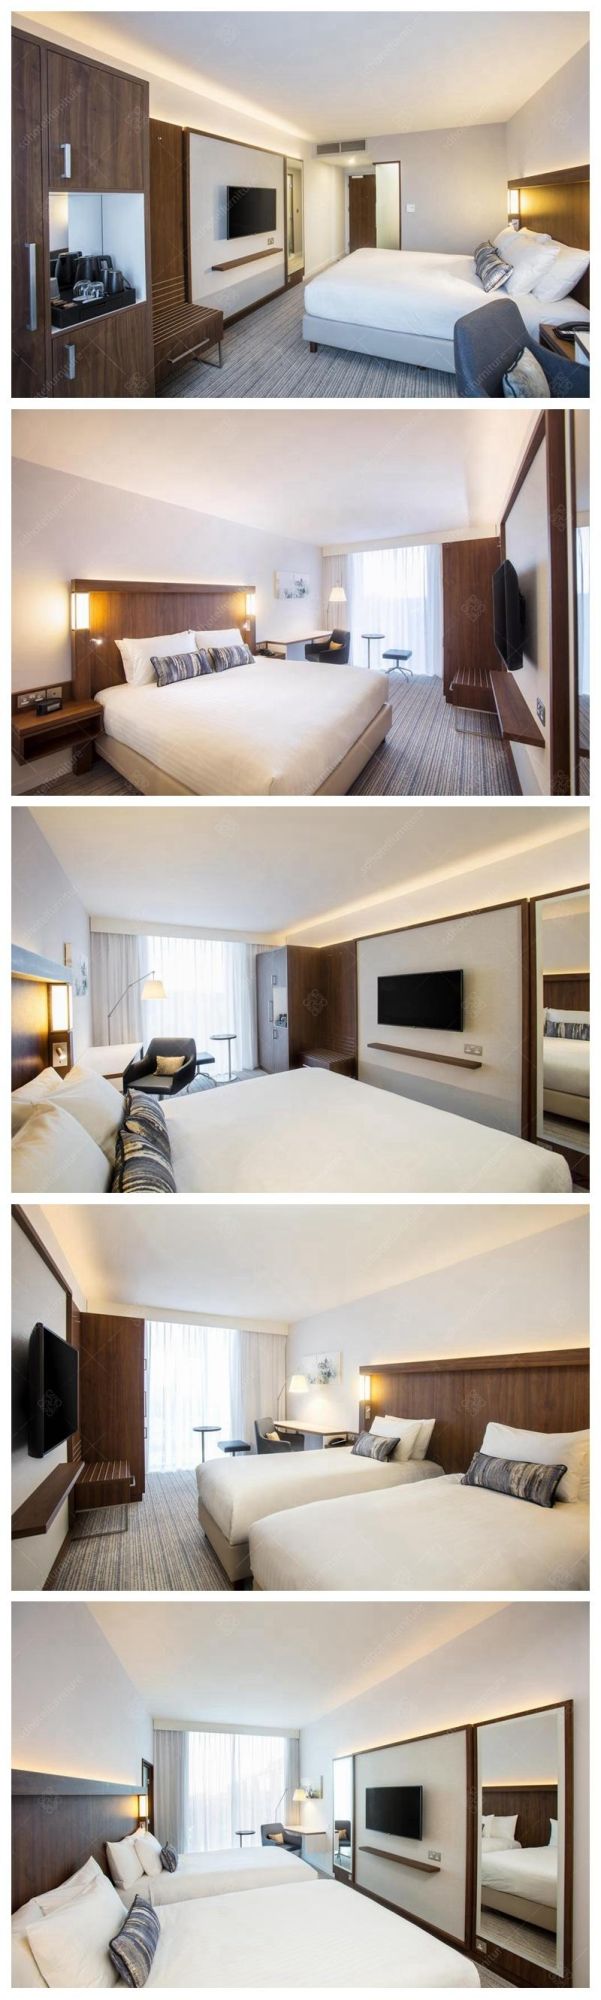 Modern Design Commercial Hotel Bedroom Furniture Sets for Sale